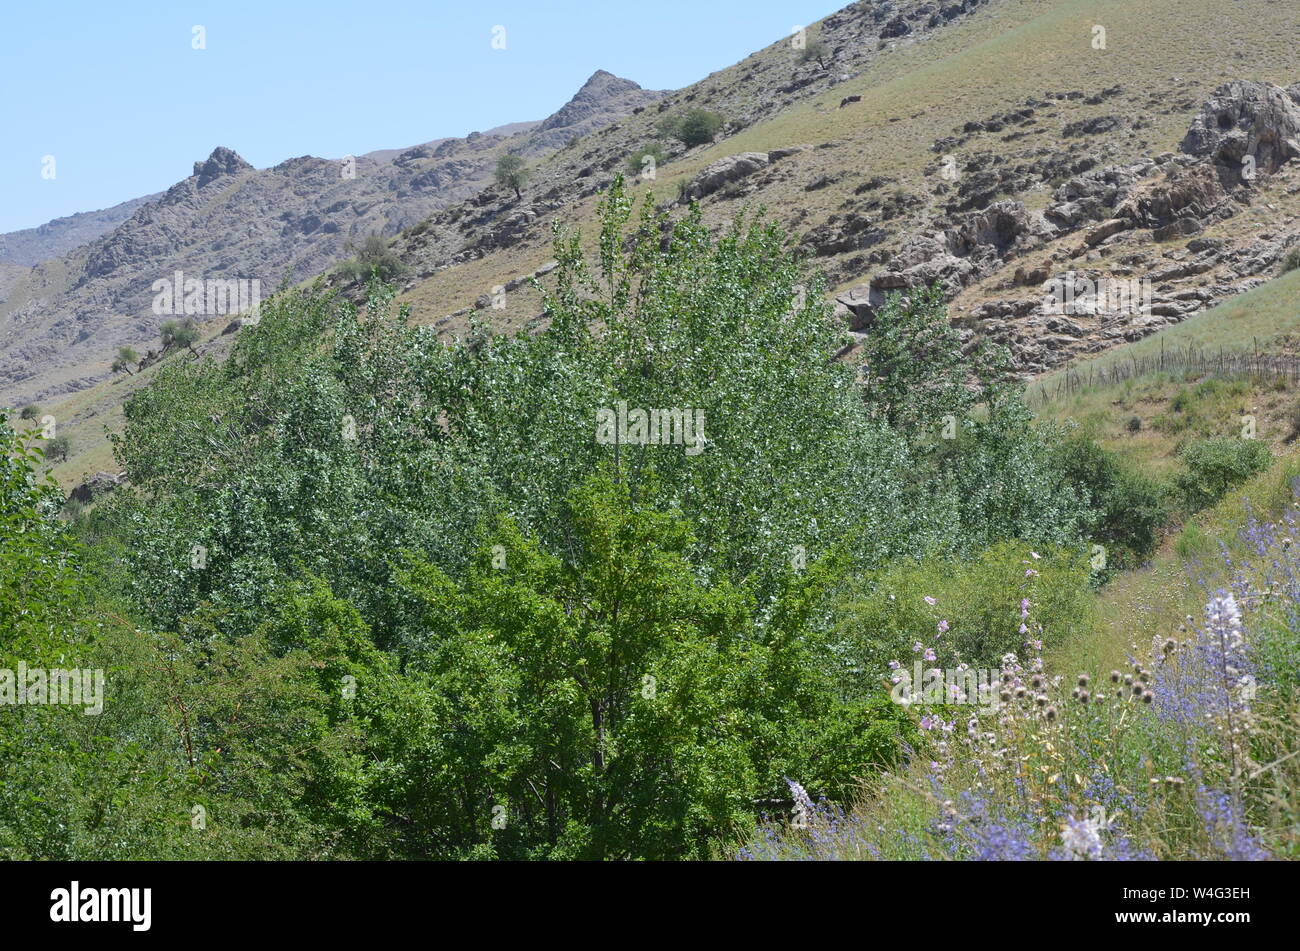 Hayat aldea en las montañas de Nurata, Central de Uzbekistán Foto de stock